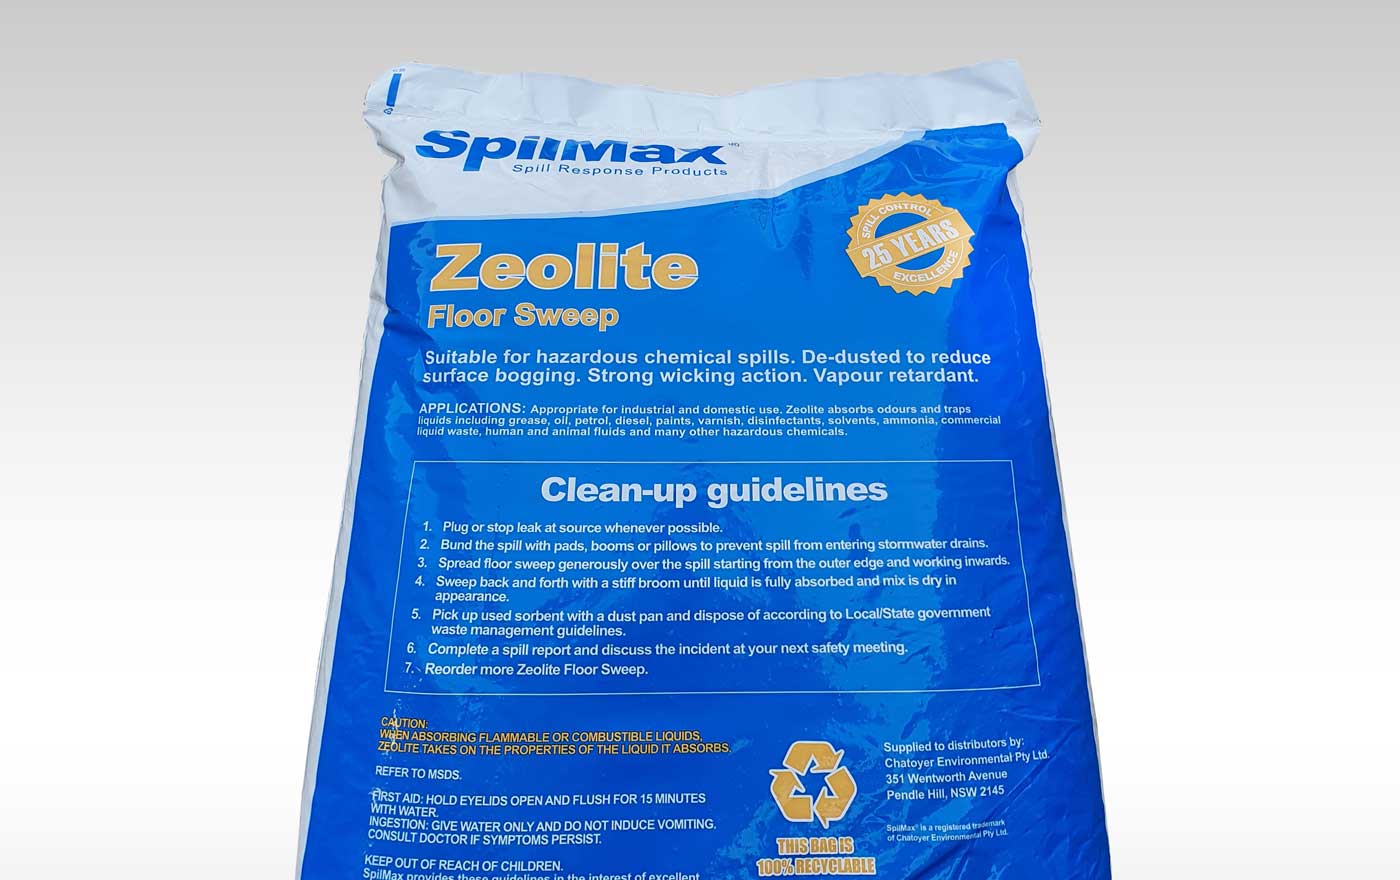 SpilMax Zeolite Floor Sweep 15L bag